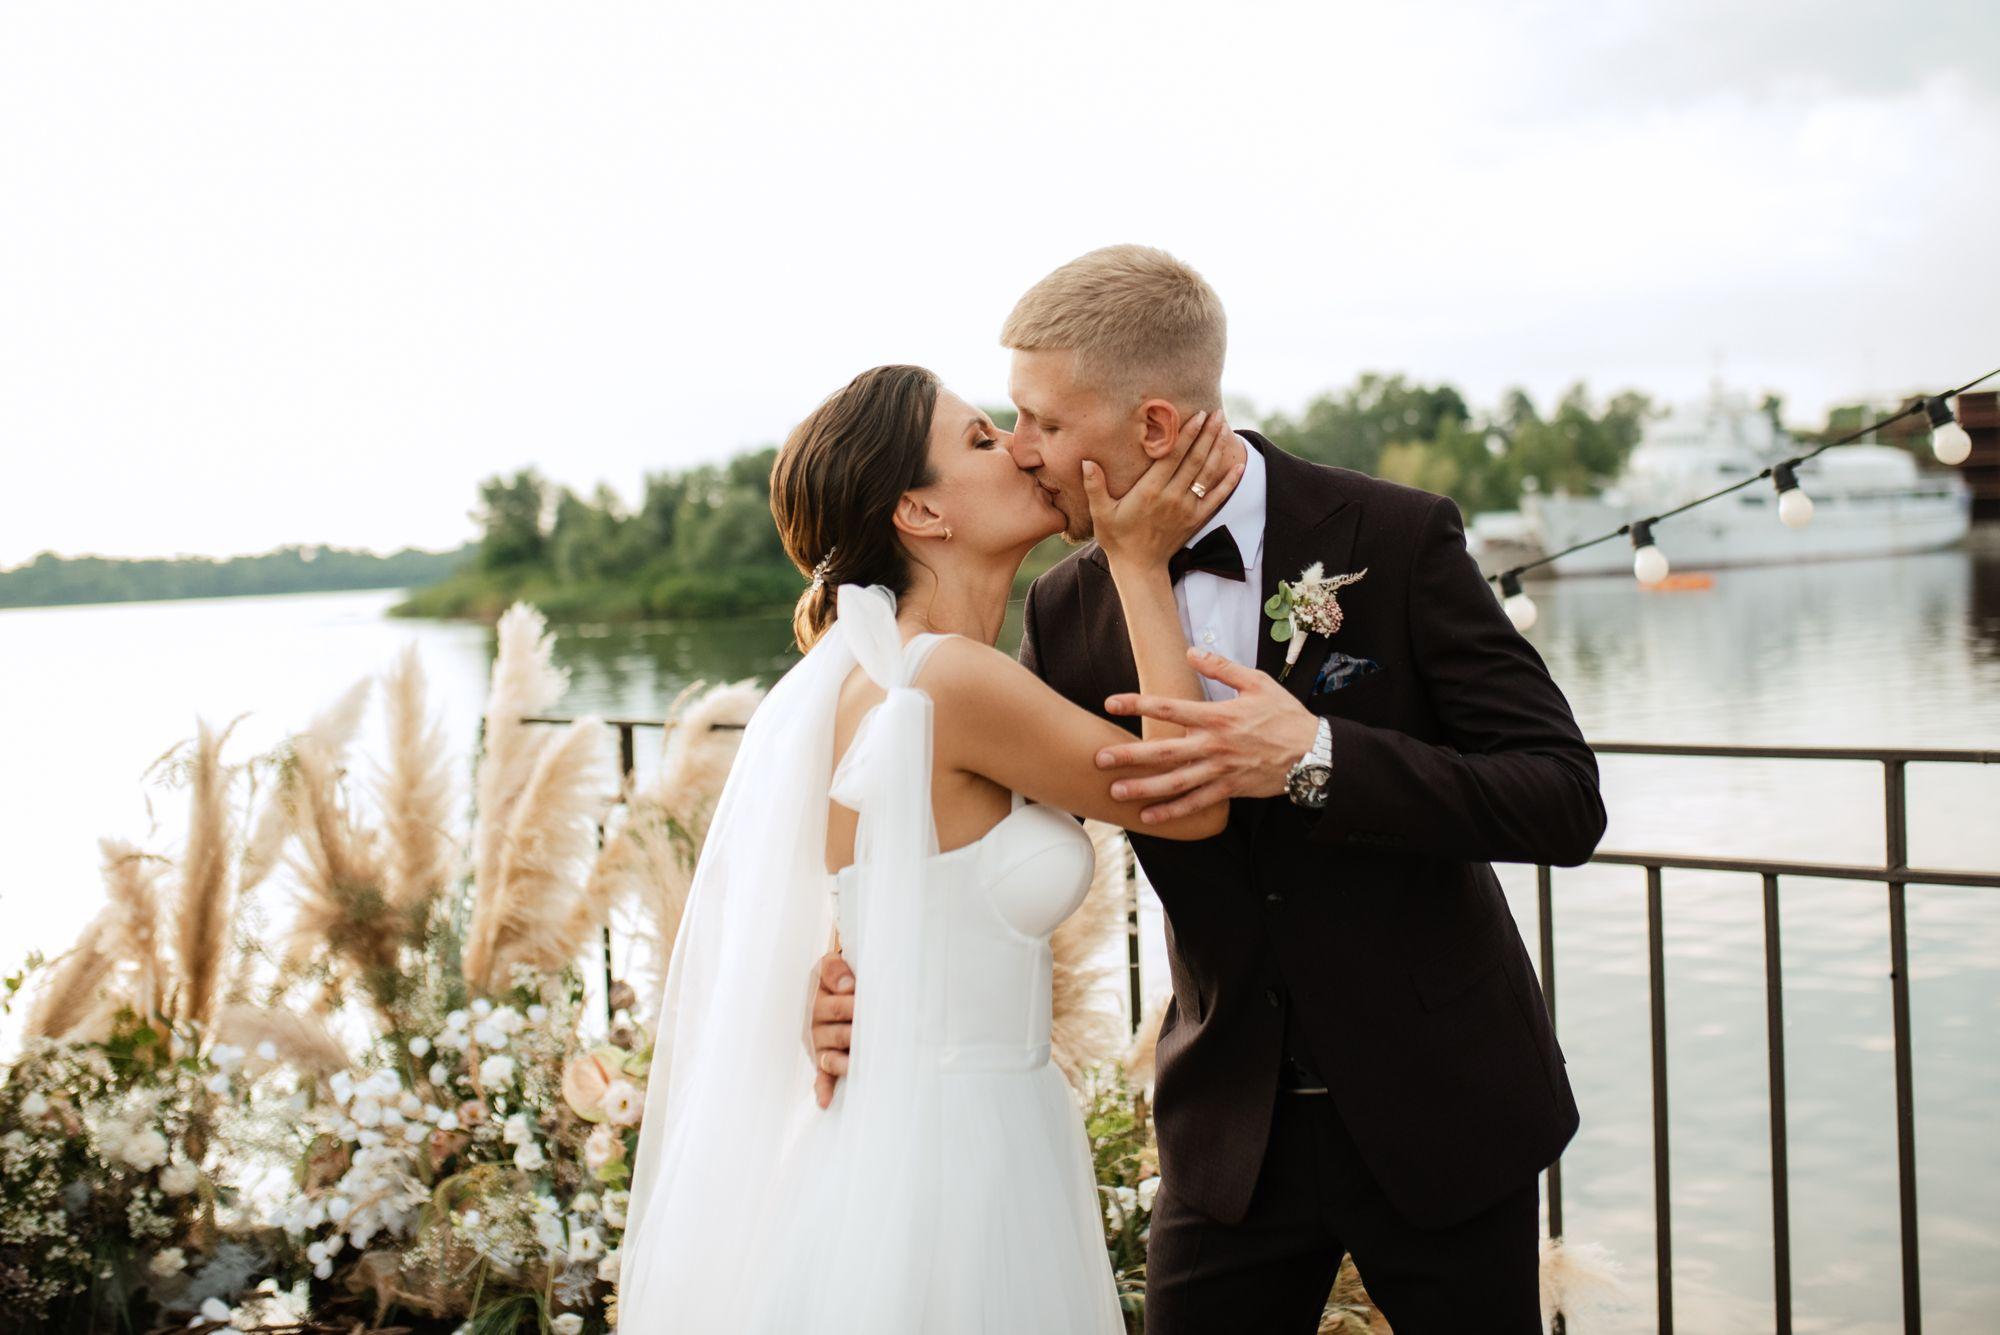 Eine Braut und ein Bräutigam küssen sich vor einem See.